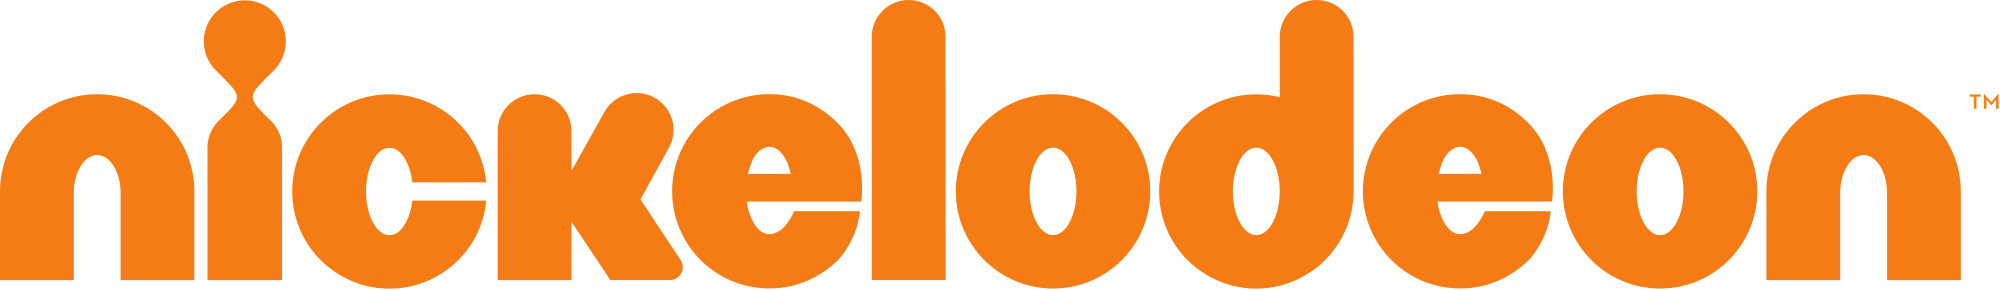 Nickelodeon Logo.png